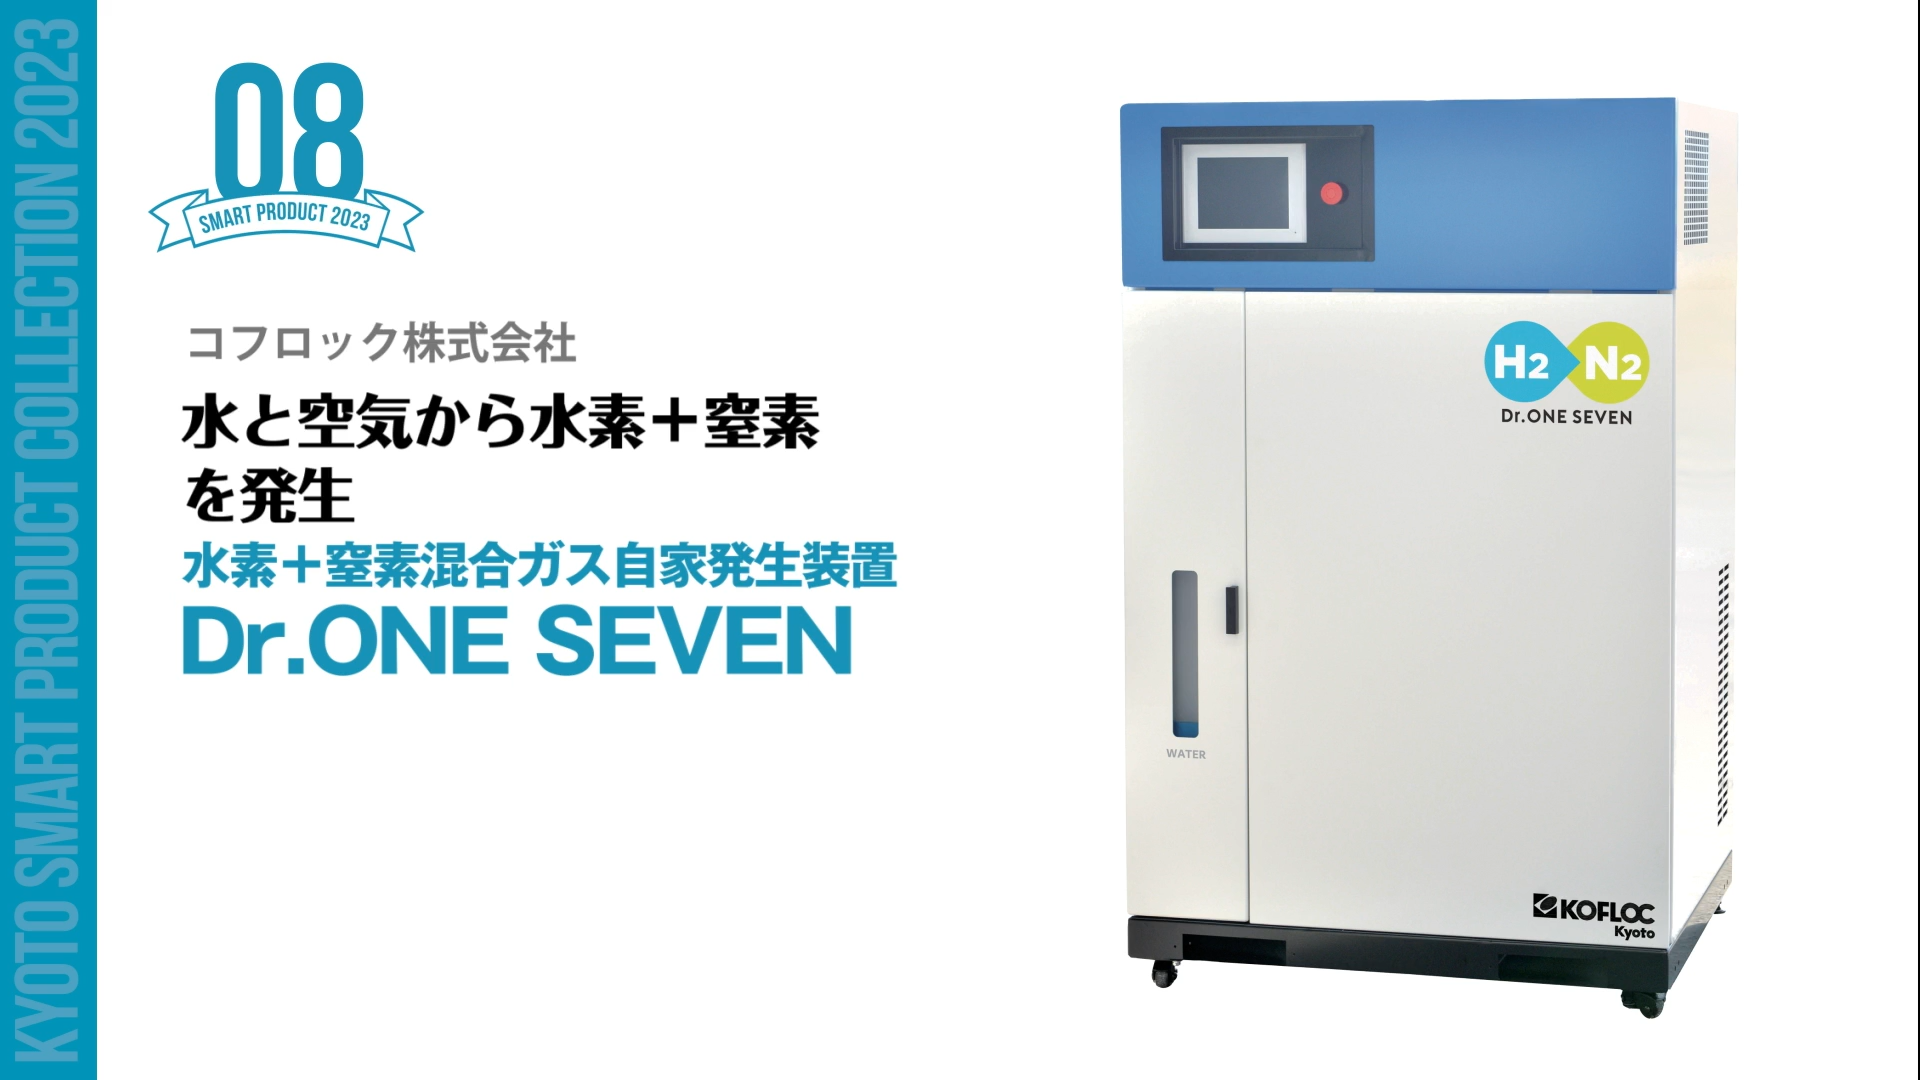 京都スマートプロダクト認定製品「Dr.ONE SEVEN」の製品紹介動画が公開されました